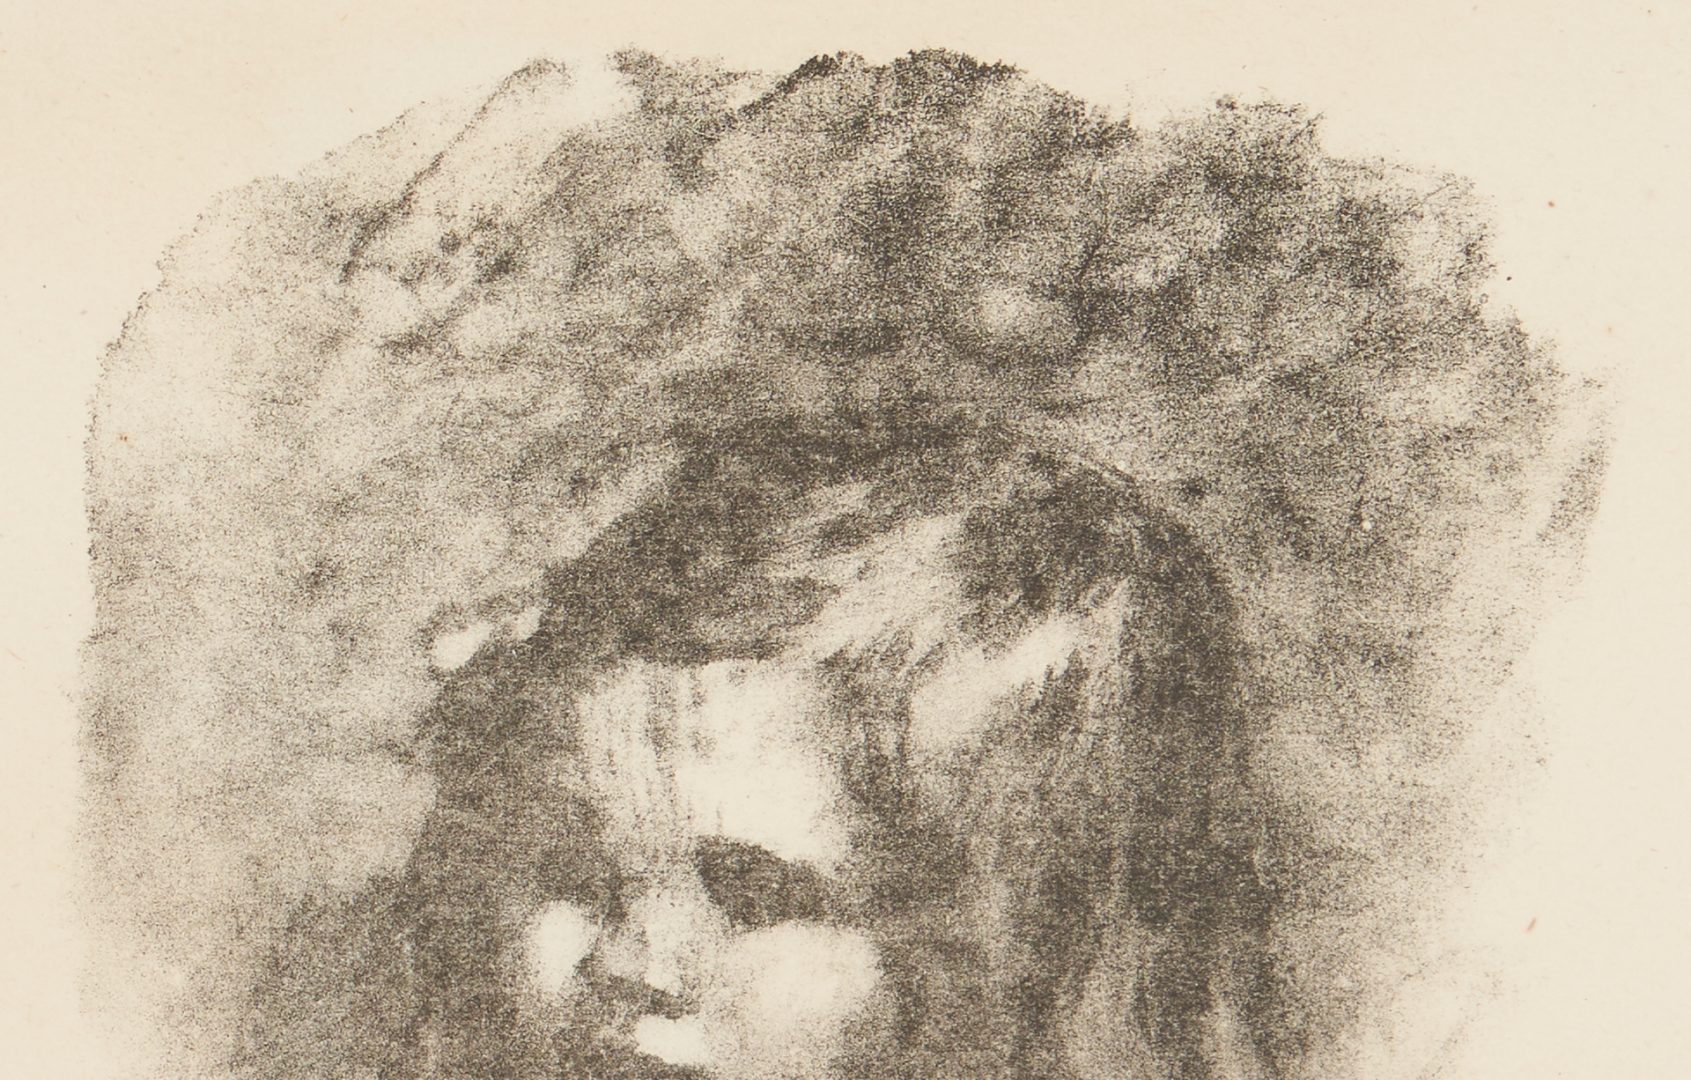 Lot 459: 2 Lithographs, Pierre-Auguste Renoir & Jules Pascin